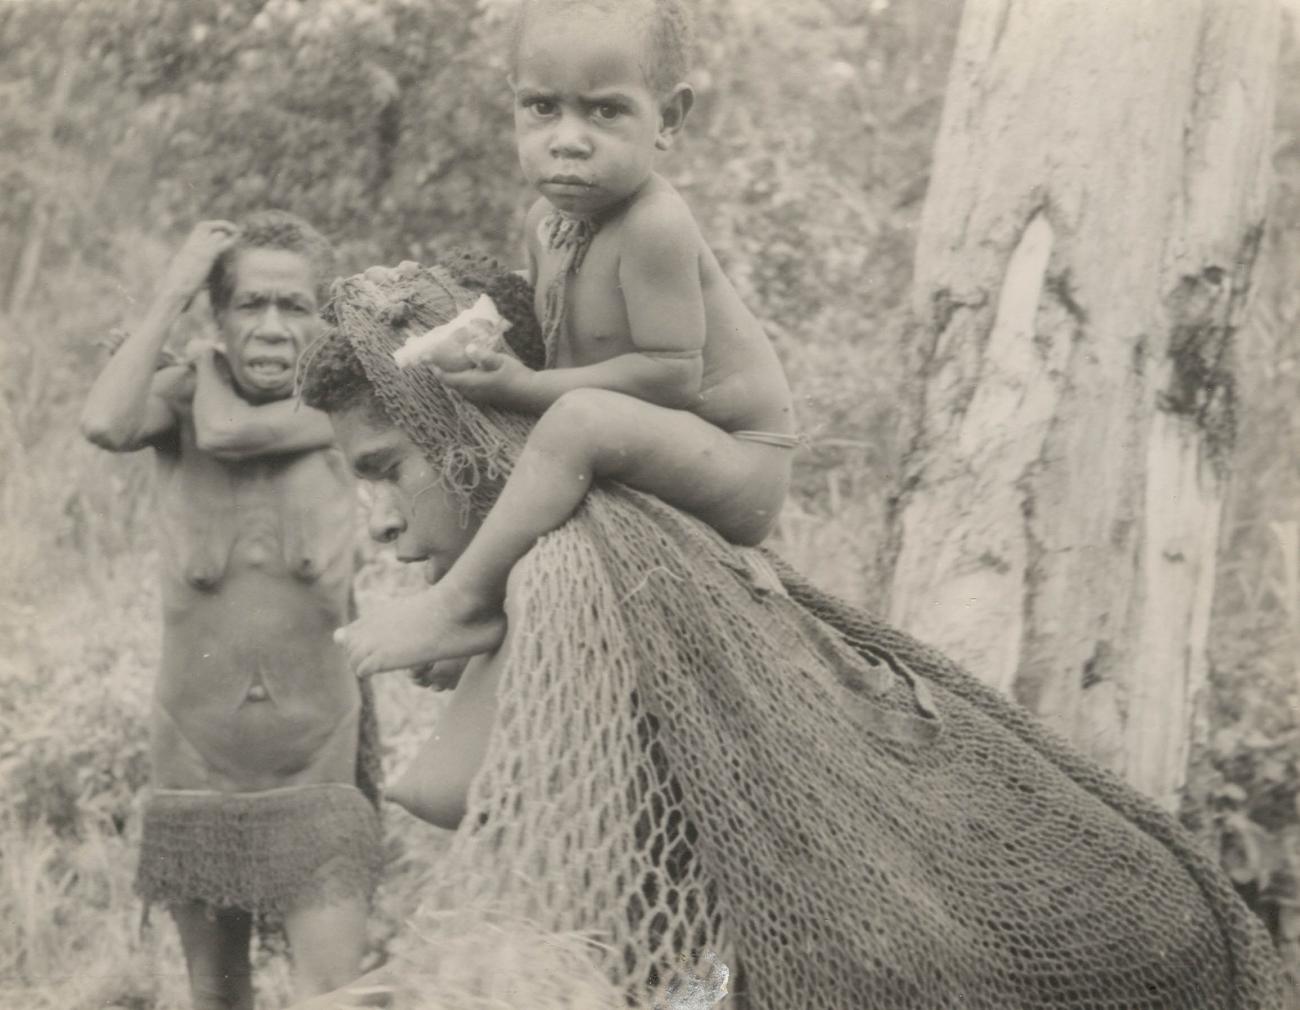 BD/269/1259 - 
Portret van Papoea-vrouw met kind
